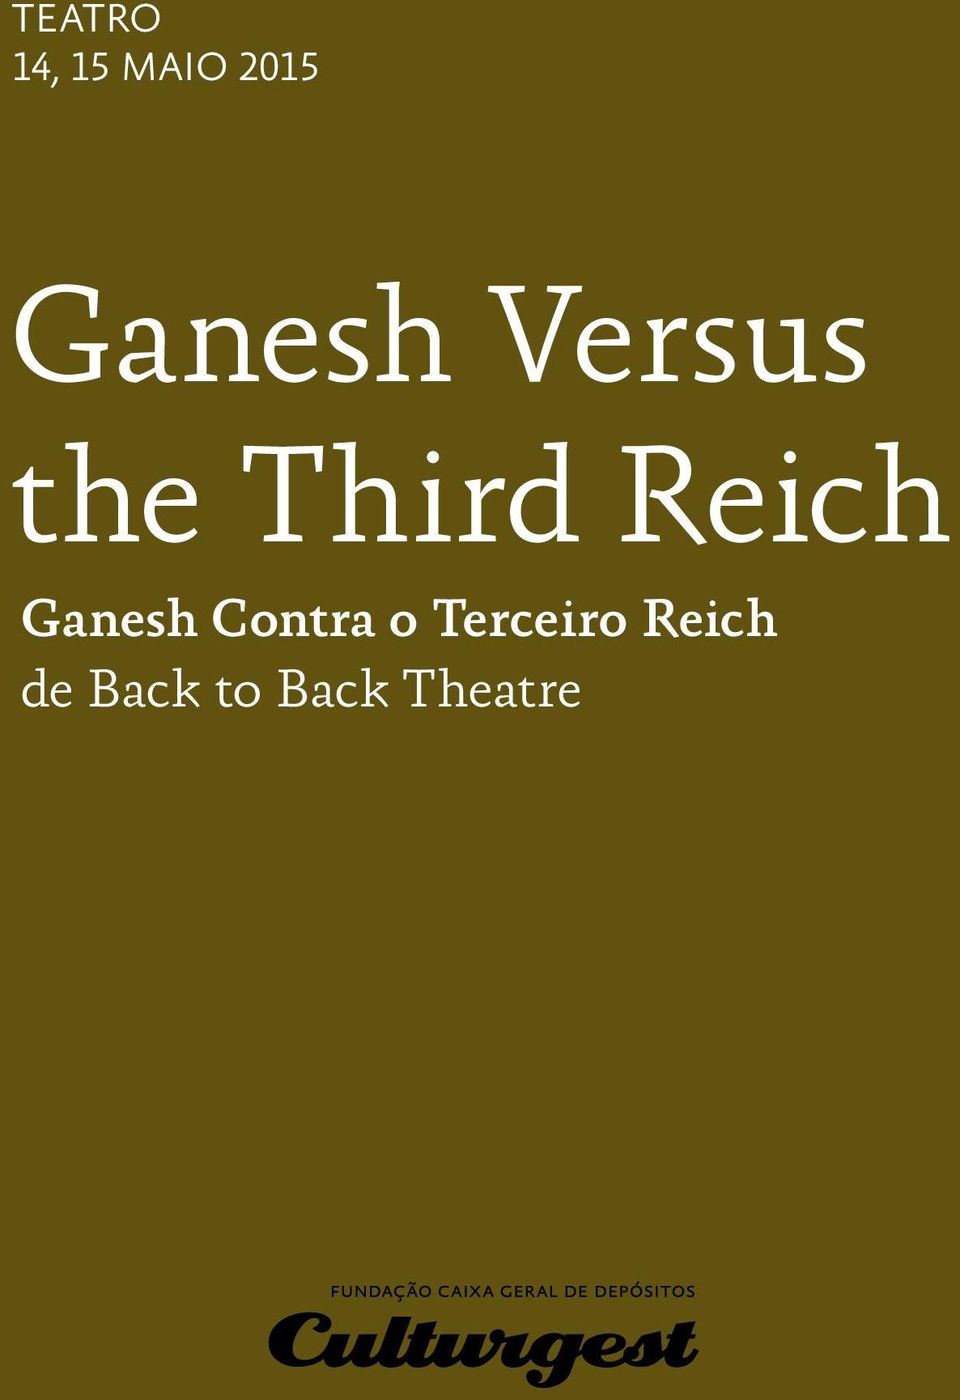 Reich Ganesh Contra o